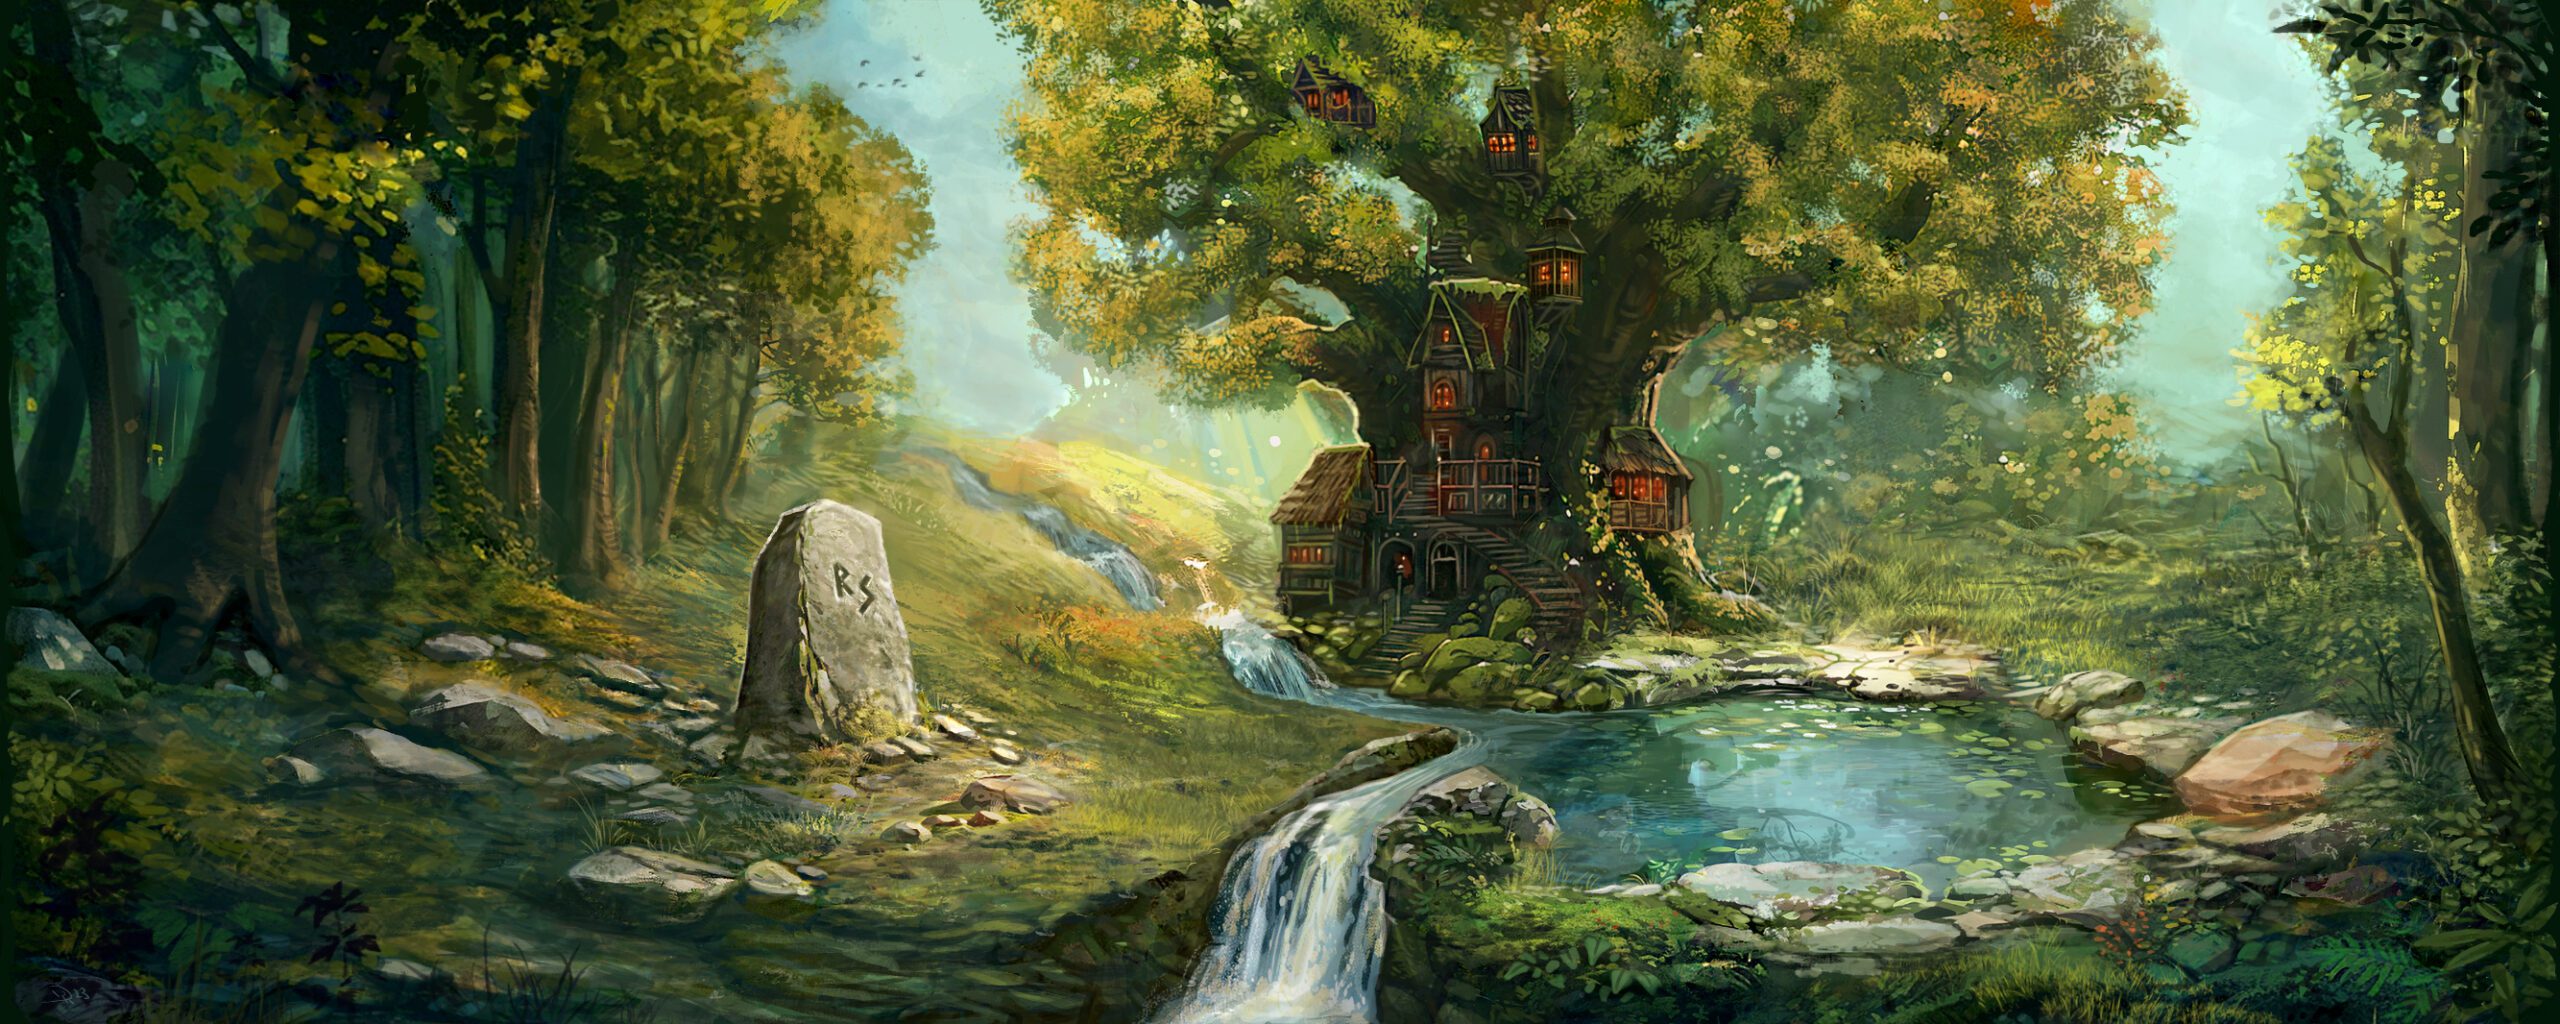 Waldlichtung mit Baumhaus im Hintergrund, einen großer Stein mit Runen beschriftet steht links neben einem kleinen See, durch den ein kleiner Bach fließt.